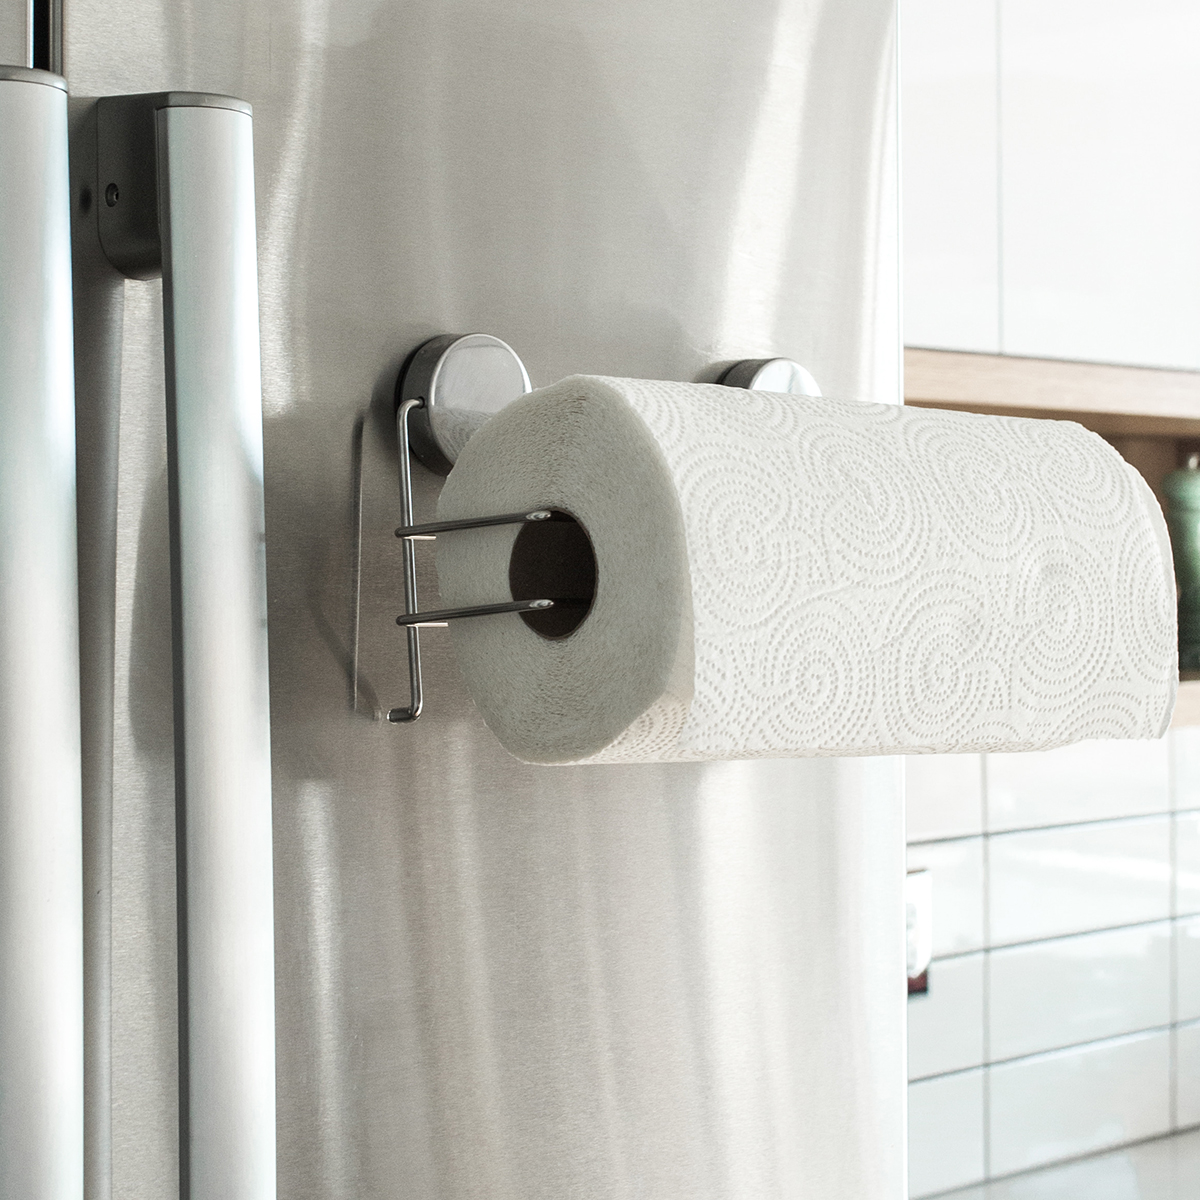 VSTAR66 Portabble Paper Towel Dispenser,Wall Mount & Countertop Tissue Towel Holder Napkins Case for Home Office 